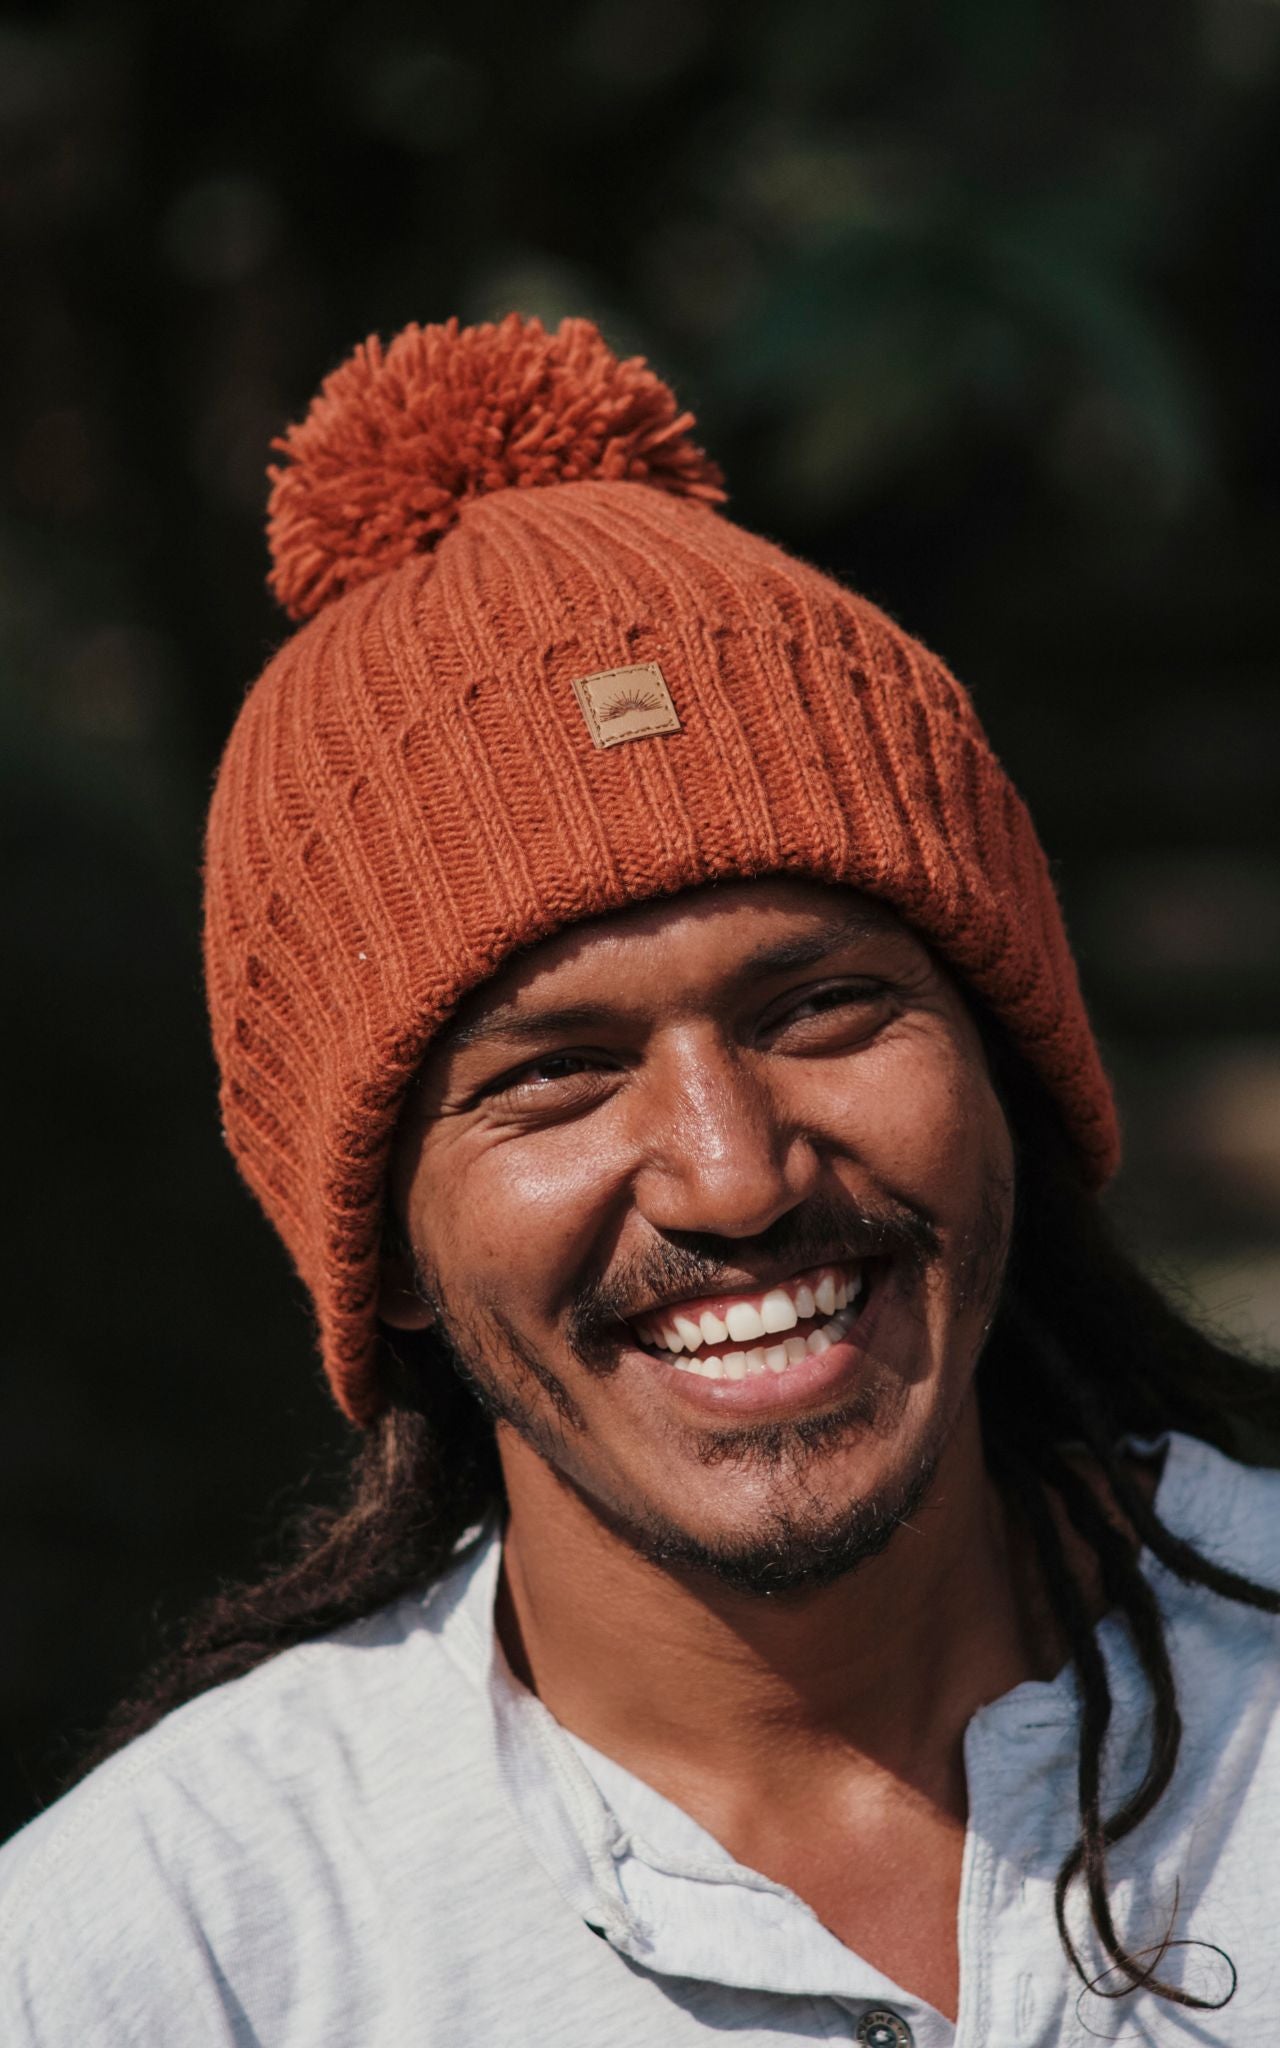 Surya Australia Ethical Wool Pompom Beanie for Men from Nepal - Burnt Orange